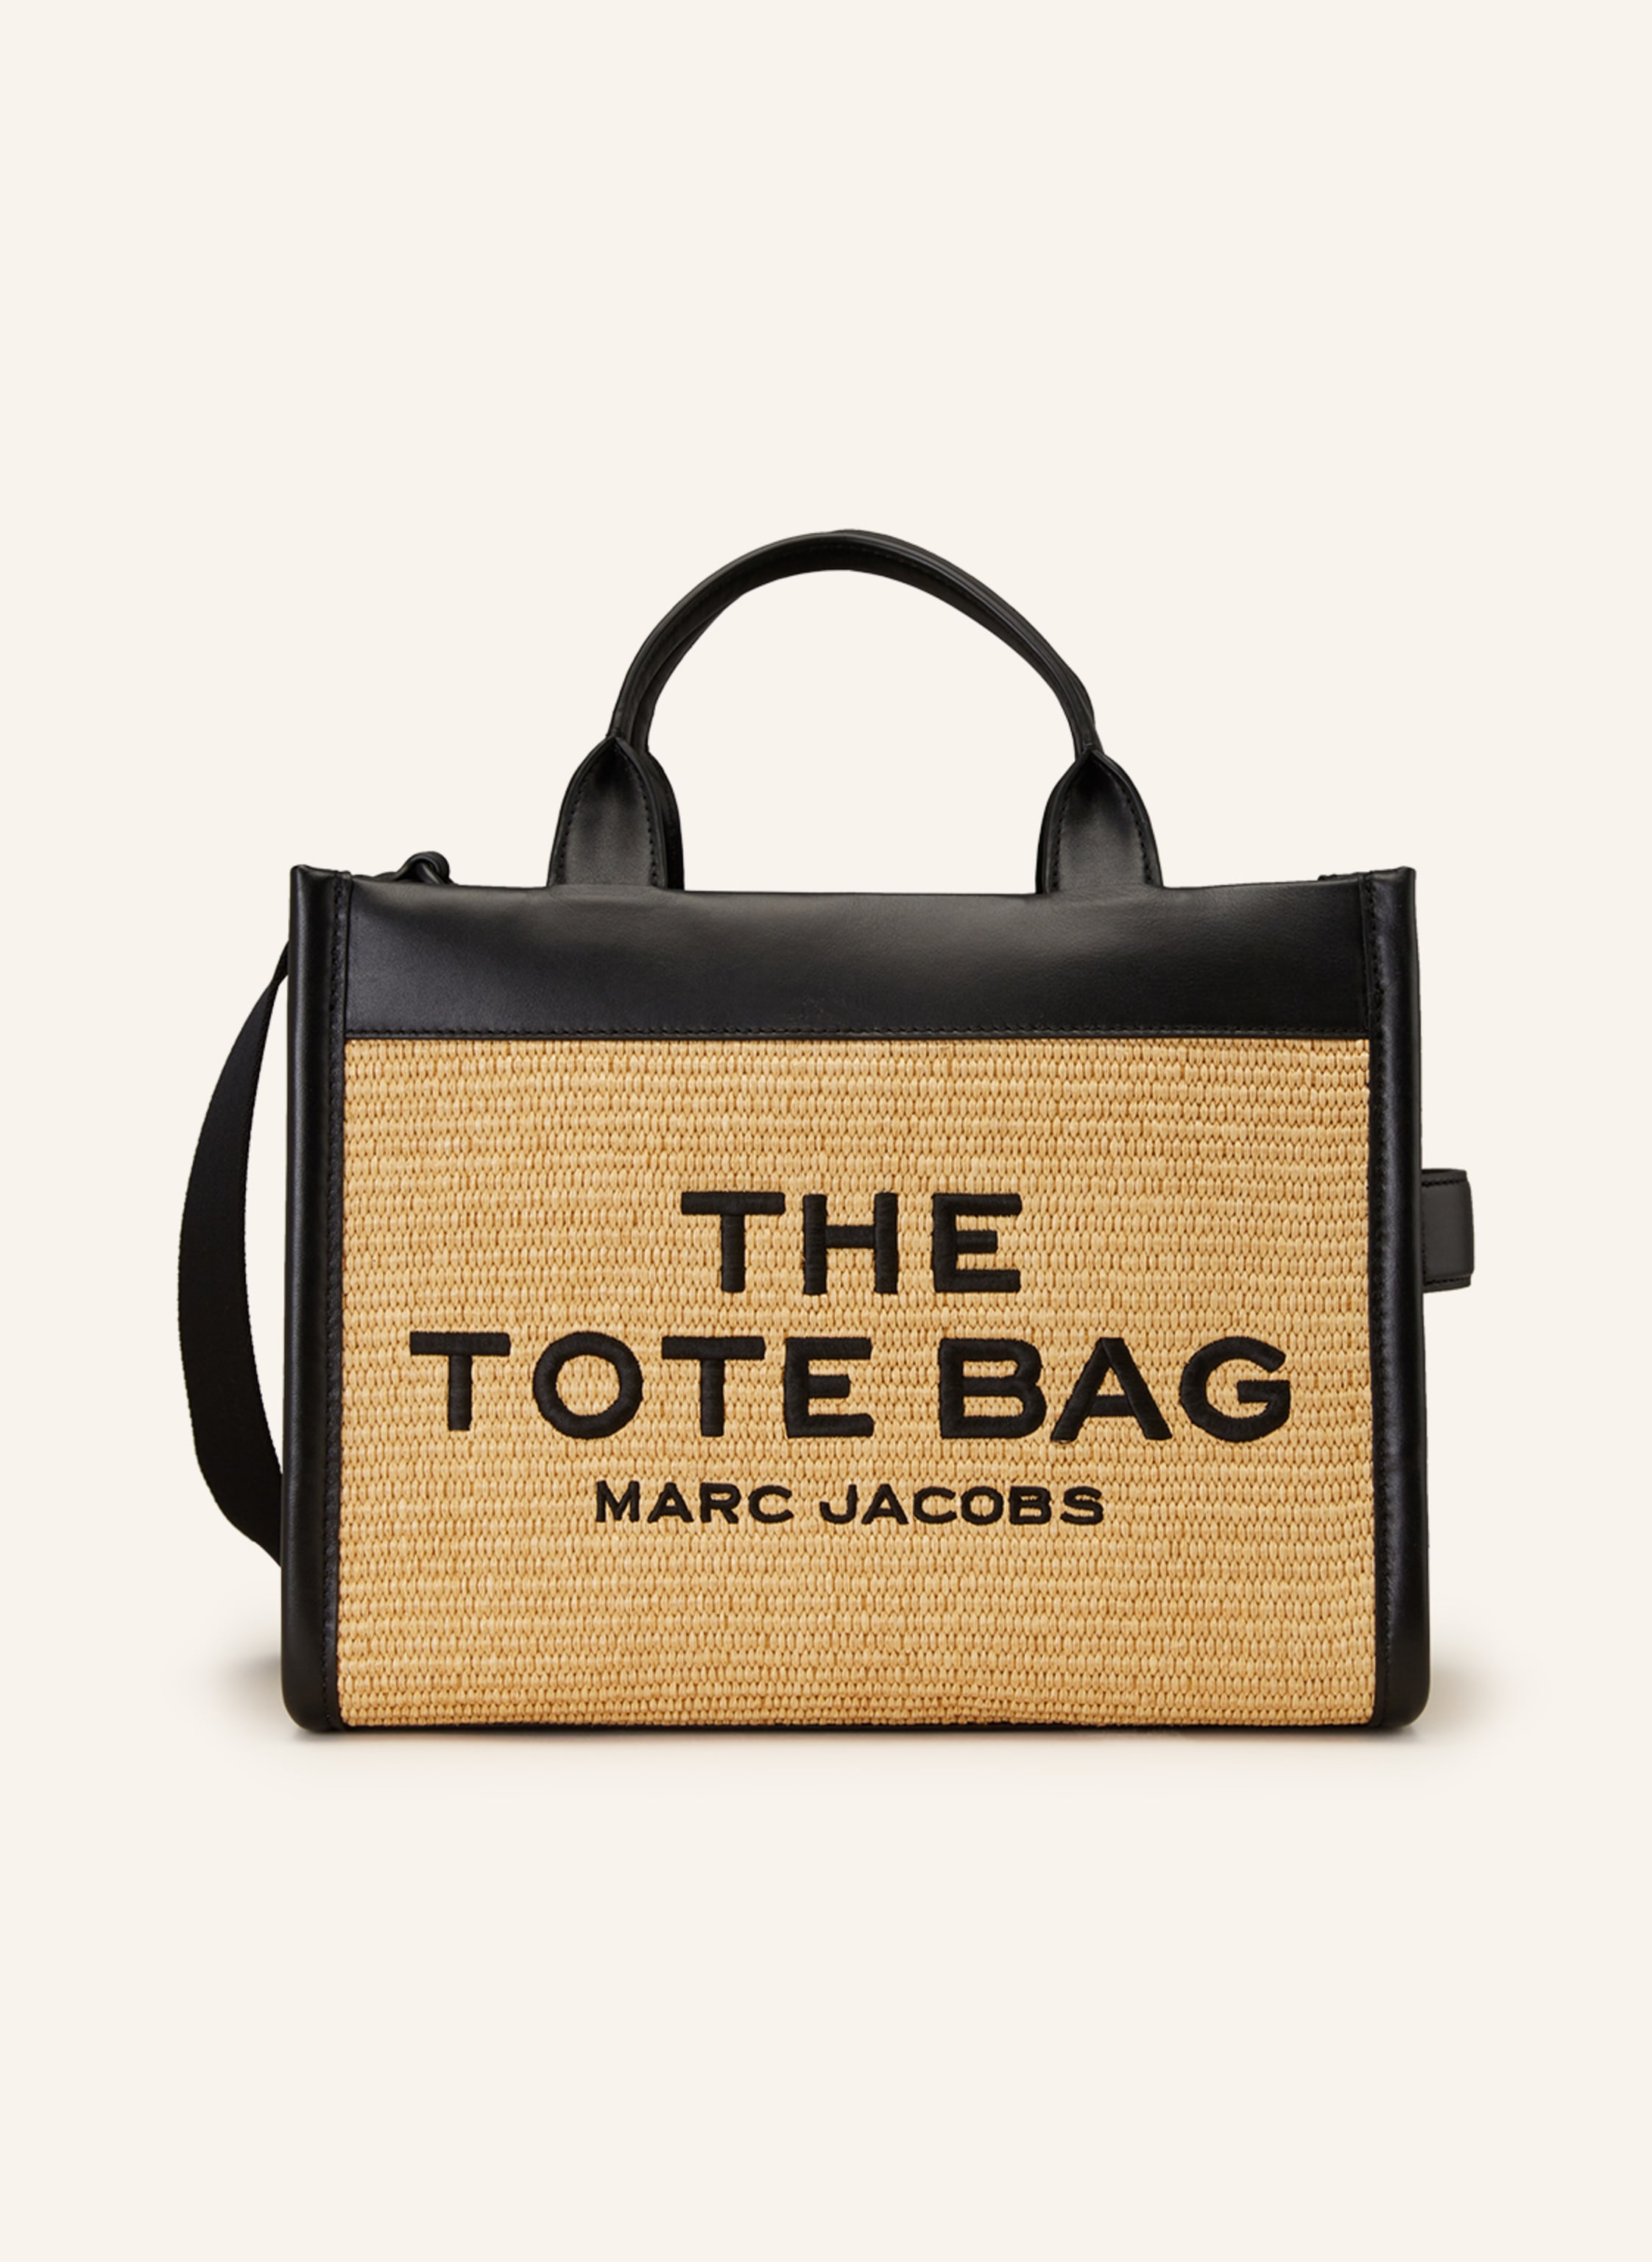 23 Marc Jacobs ideas  marc jacobs, marc jacobs snapshot bag, fashion